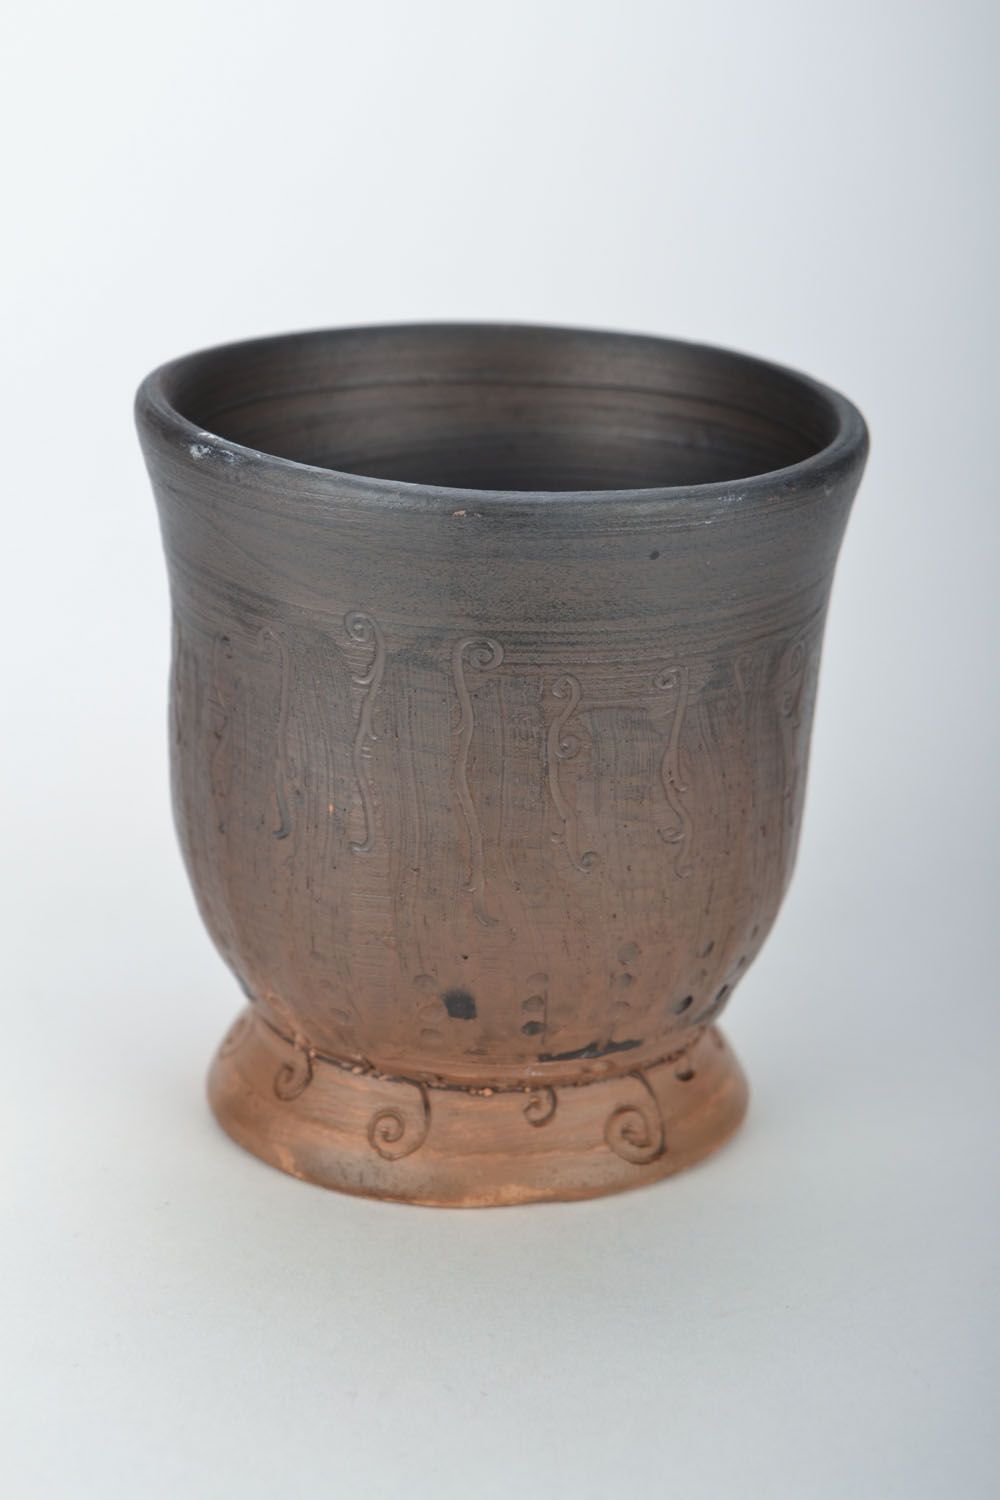 Clay drinking mug with no handle in dark brown color 0,34 lb photo 3